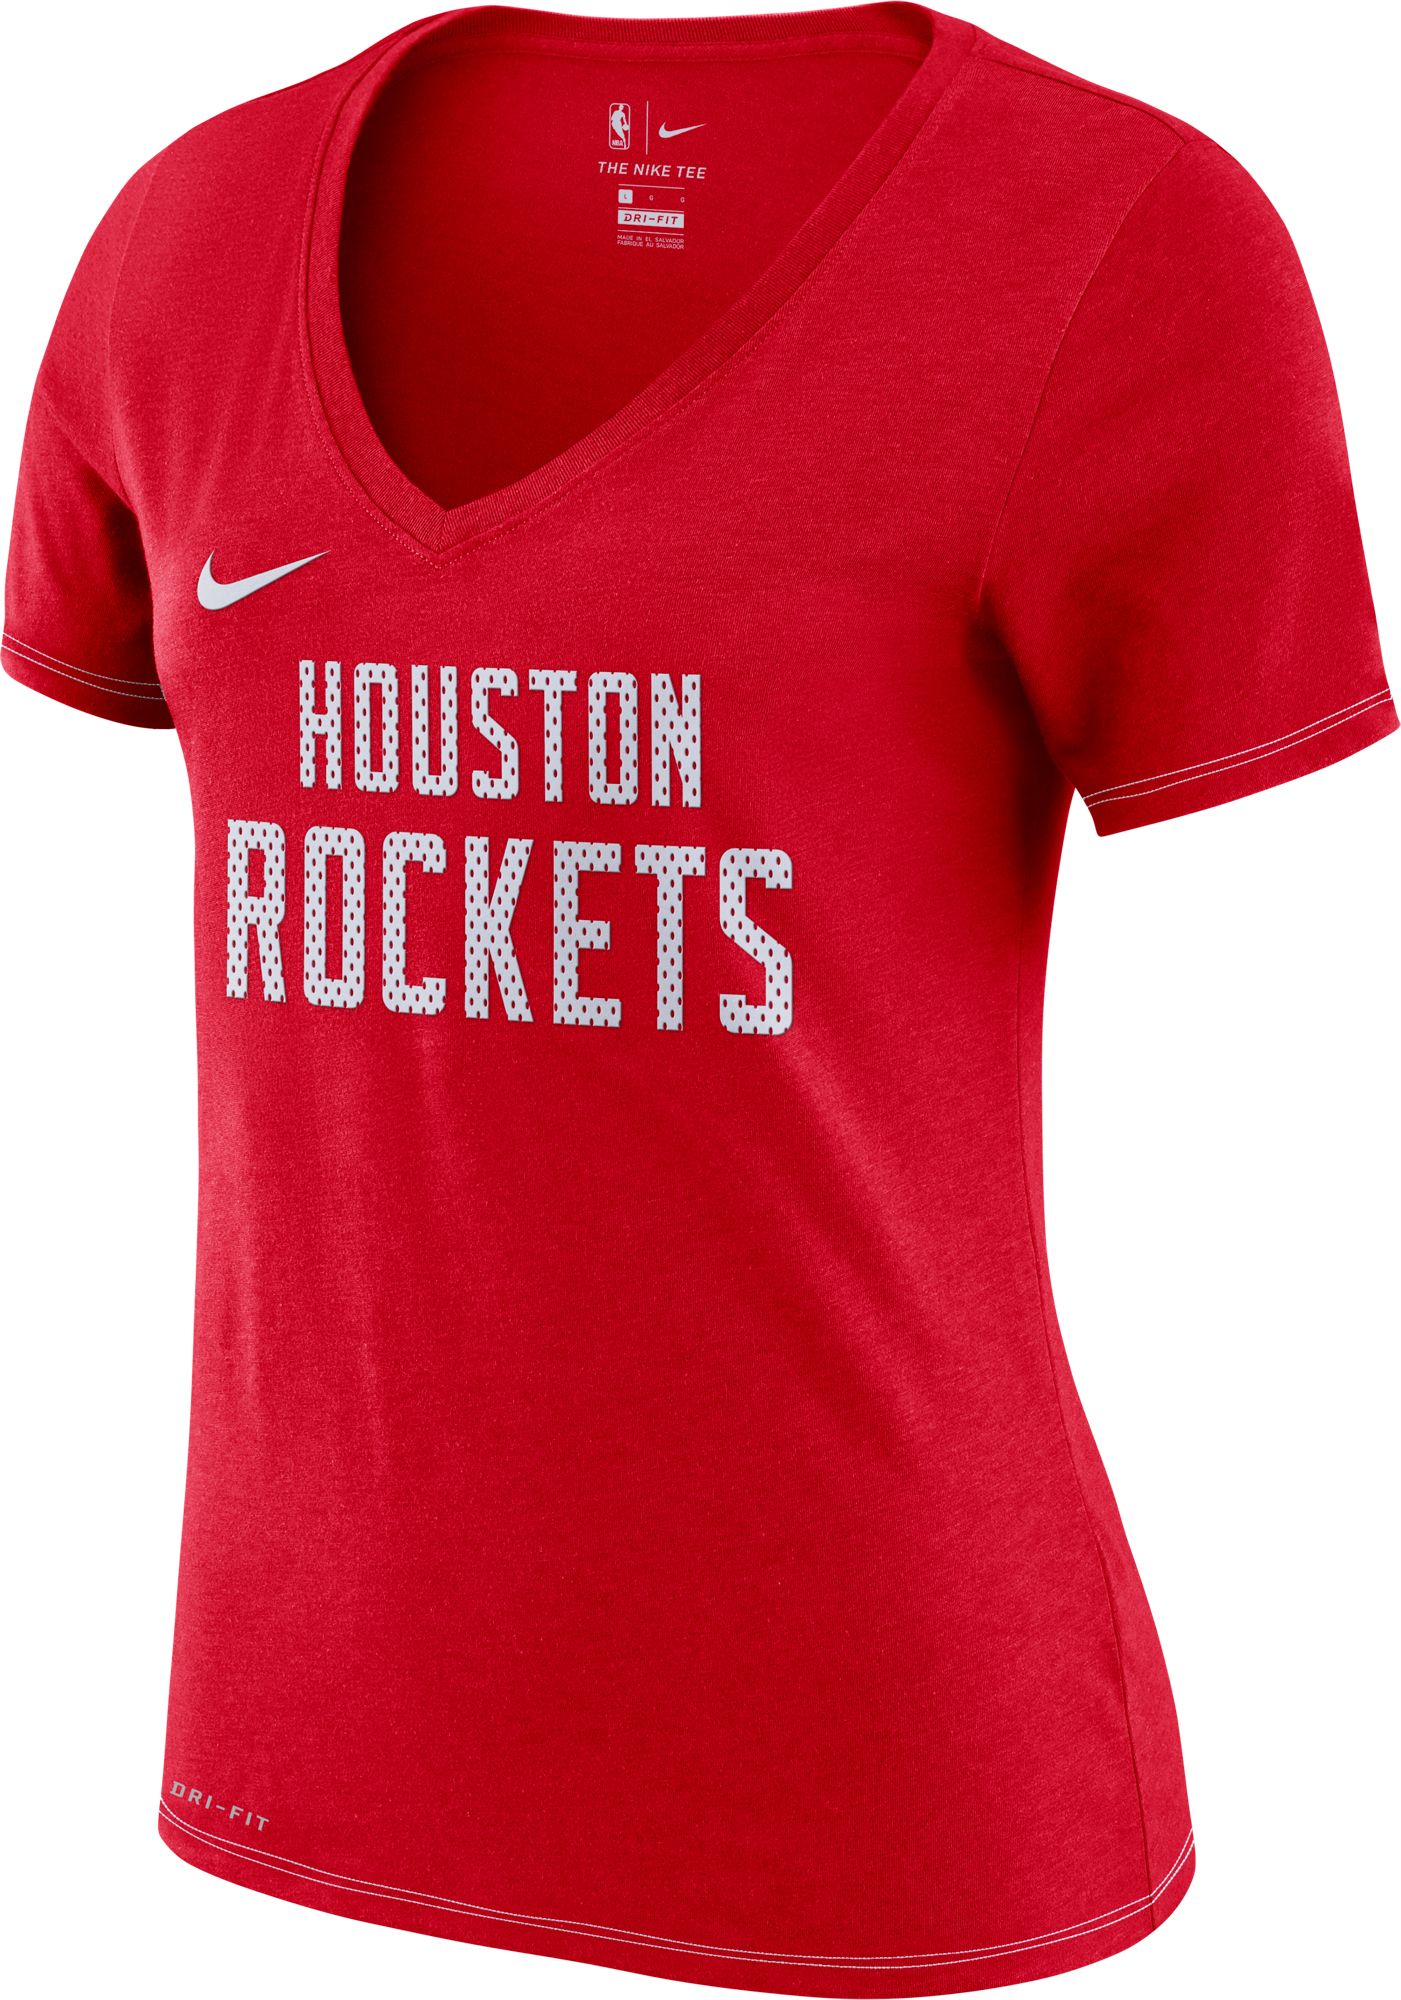 houston rockets women's jersey